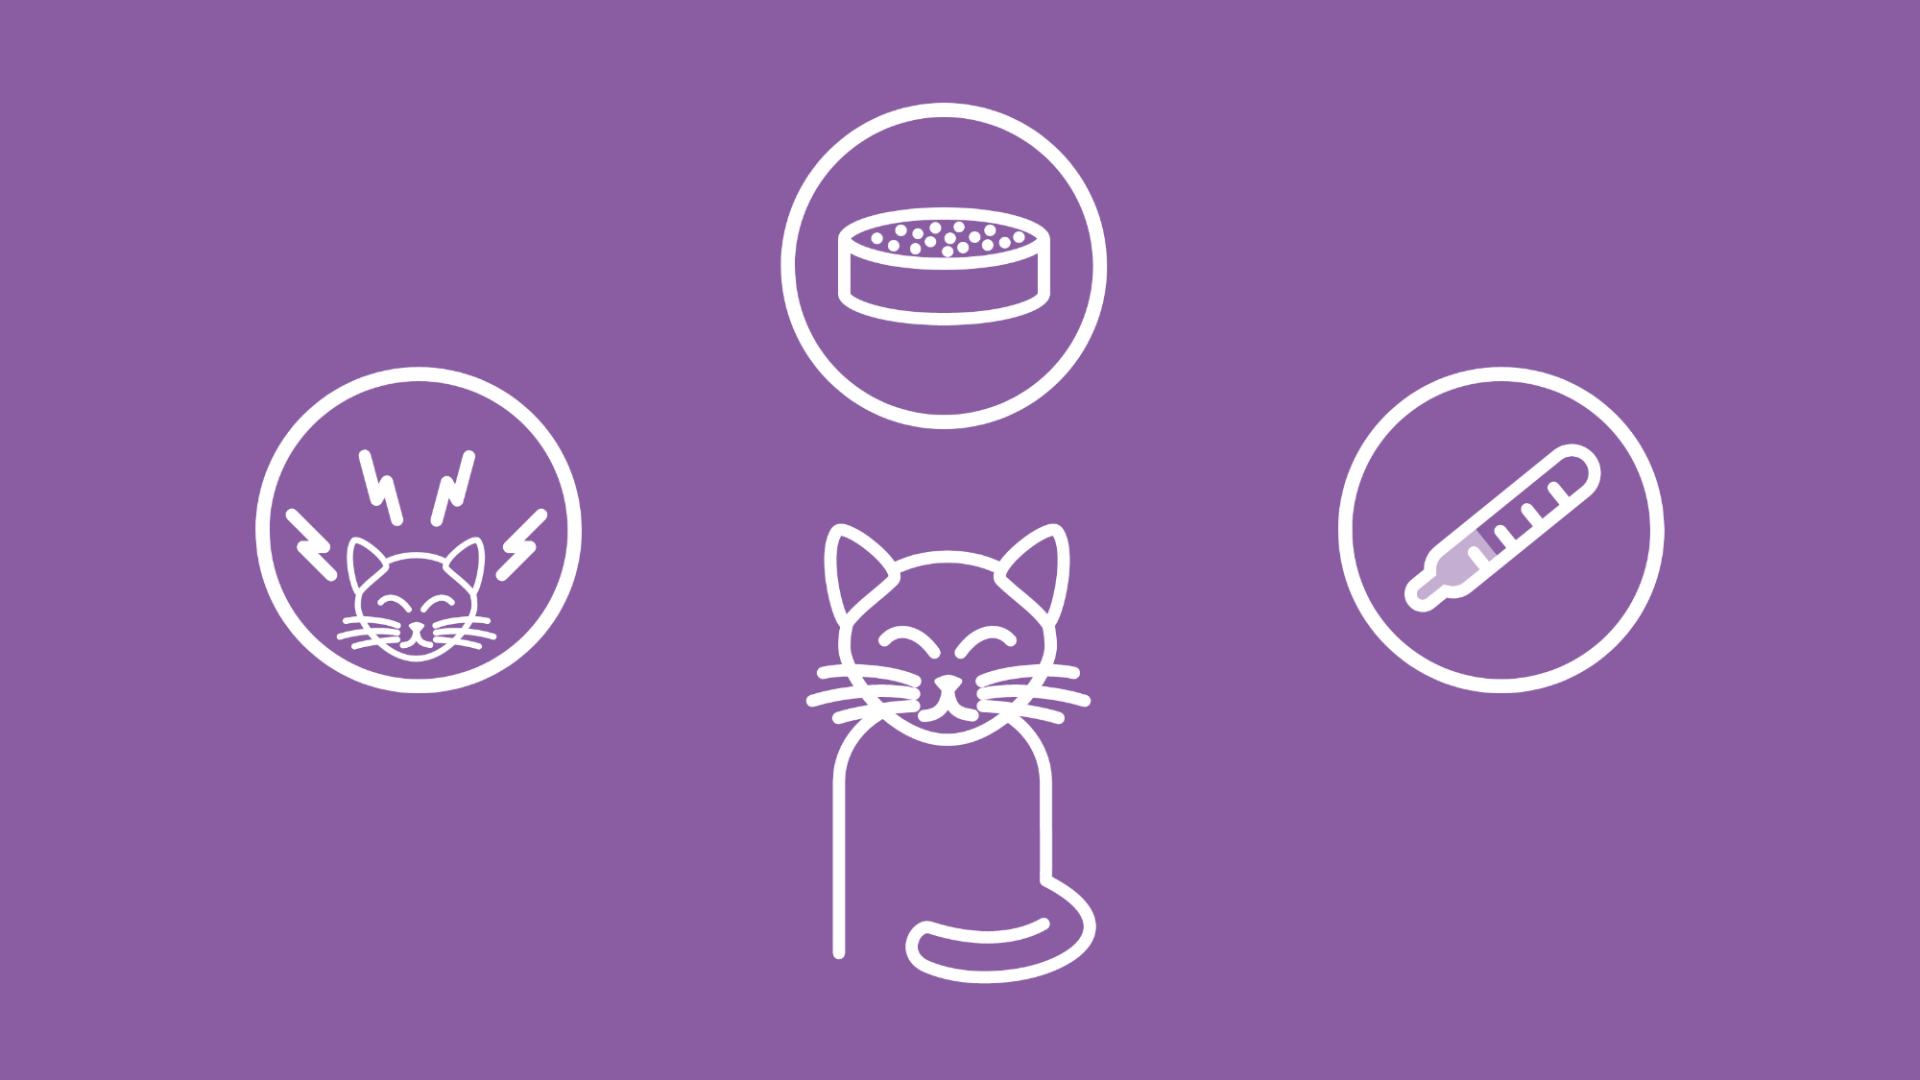 Das Bild zeigt eine Katze, neben der die Hauptursachen für Futterverweigerung wie Stress, Krankheit oder falsches Futter zu sehen sind.  